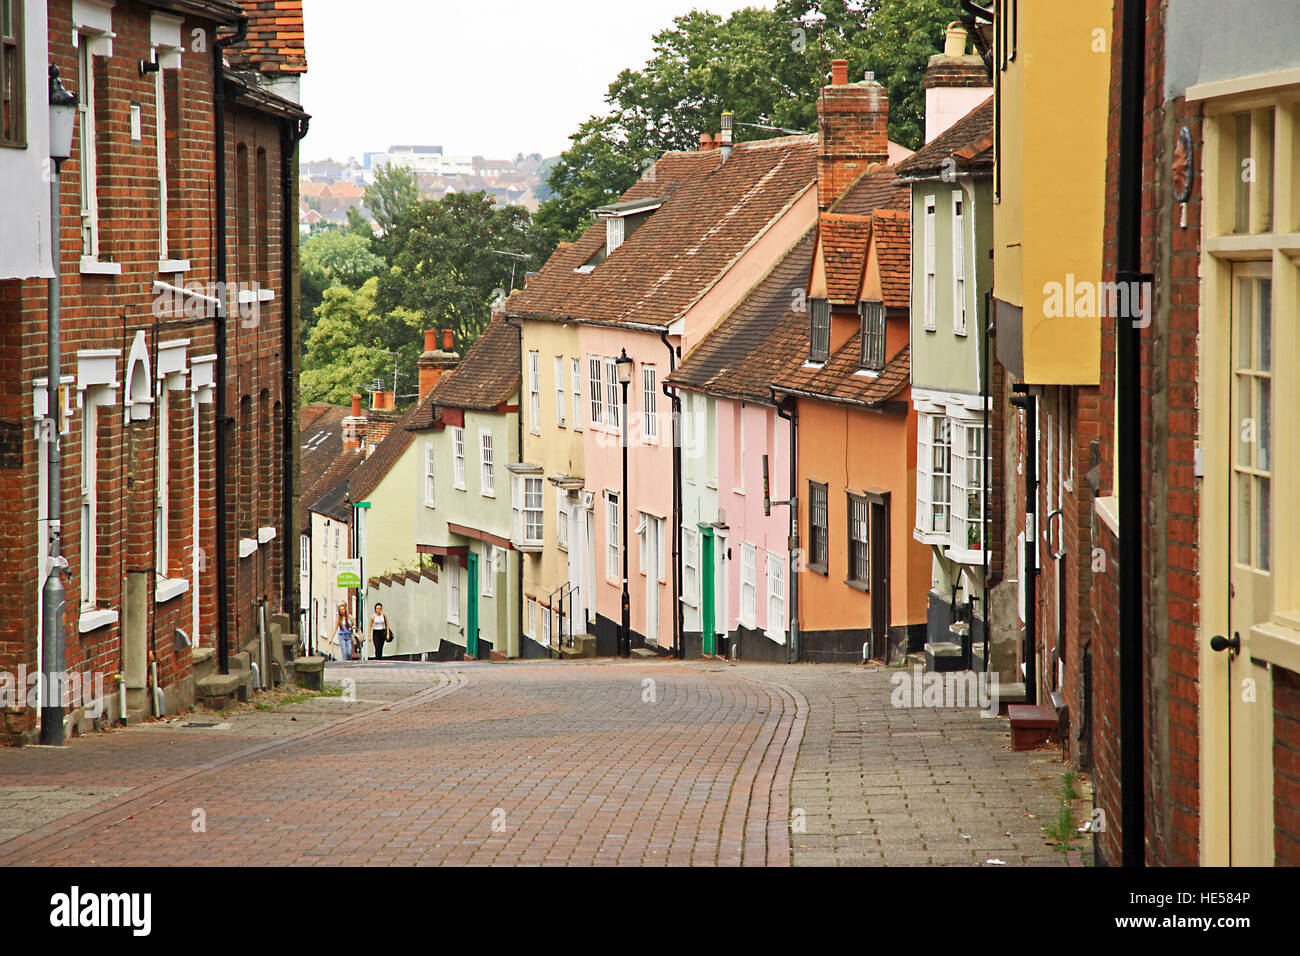 Alten block gepflasterte Strasse in Colchester, der Hauptstadt der Grafschaft Essex England Stockfoto